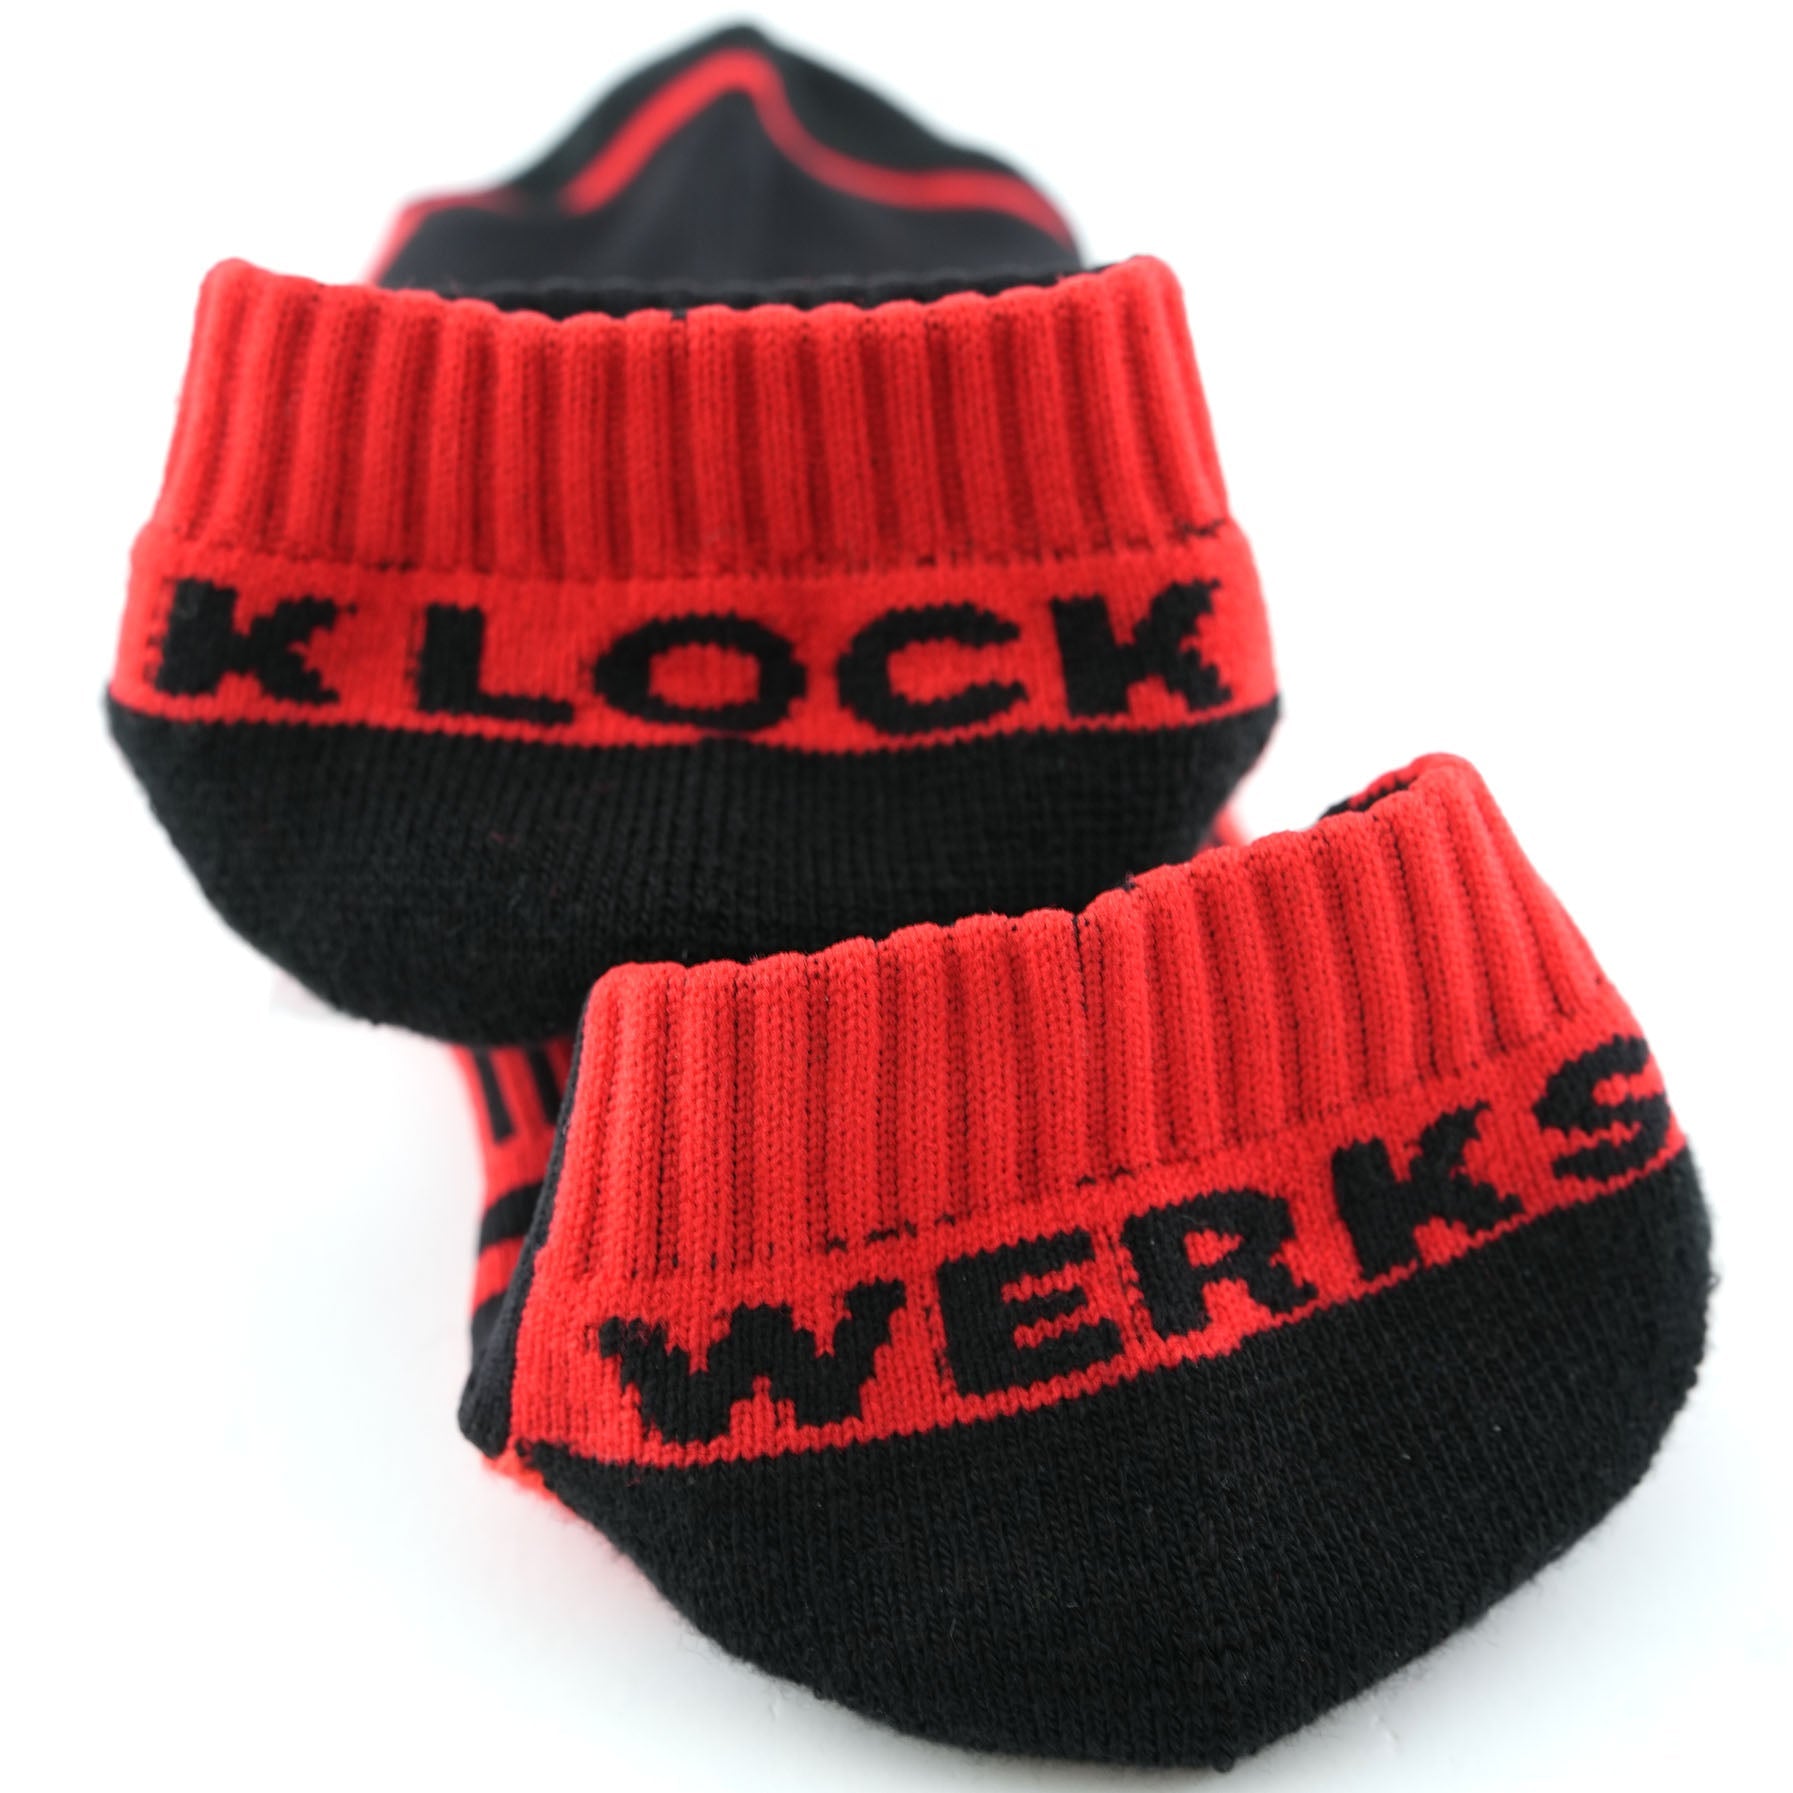 Klock Werks x Fuel Klock Low Profile Socks in Red with Klock Werks on the heels(Red with Klock Werks on the heels)